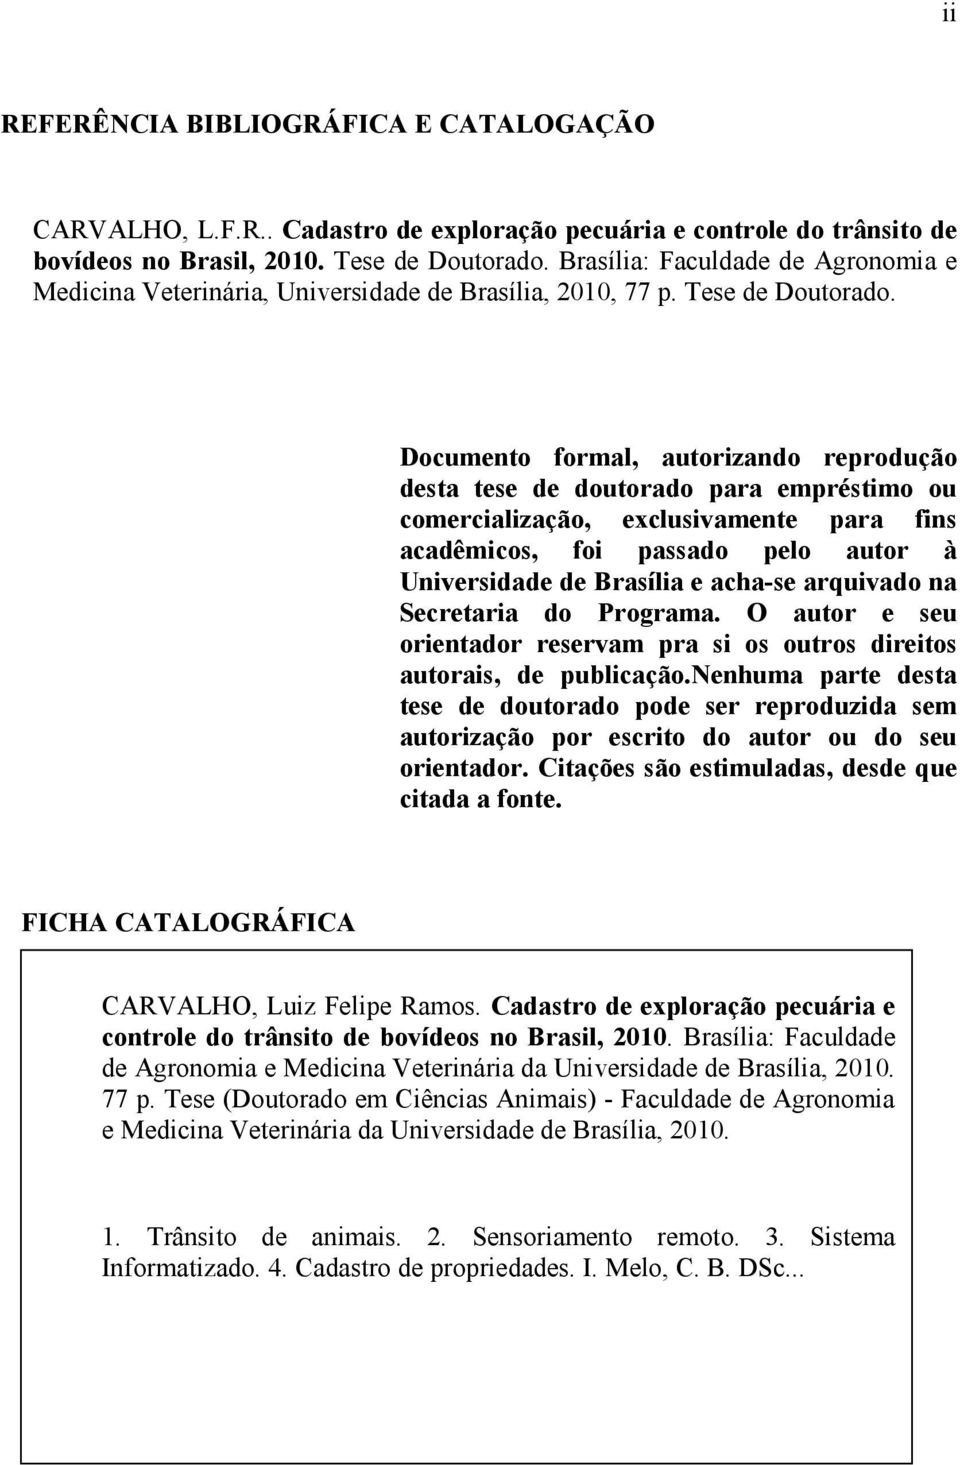 Documento formal, autorizando reprodução desta tese de doutorado para empréstimo ou comercialização, exclusivamente para fins acadêmicos, foi passado pelo autor à Universidade de Brasília e acha-se